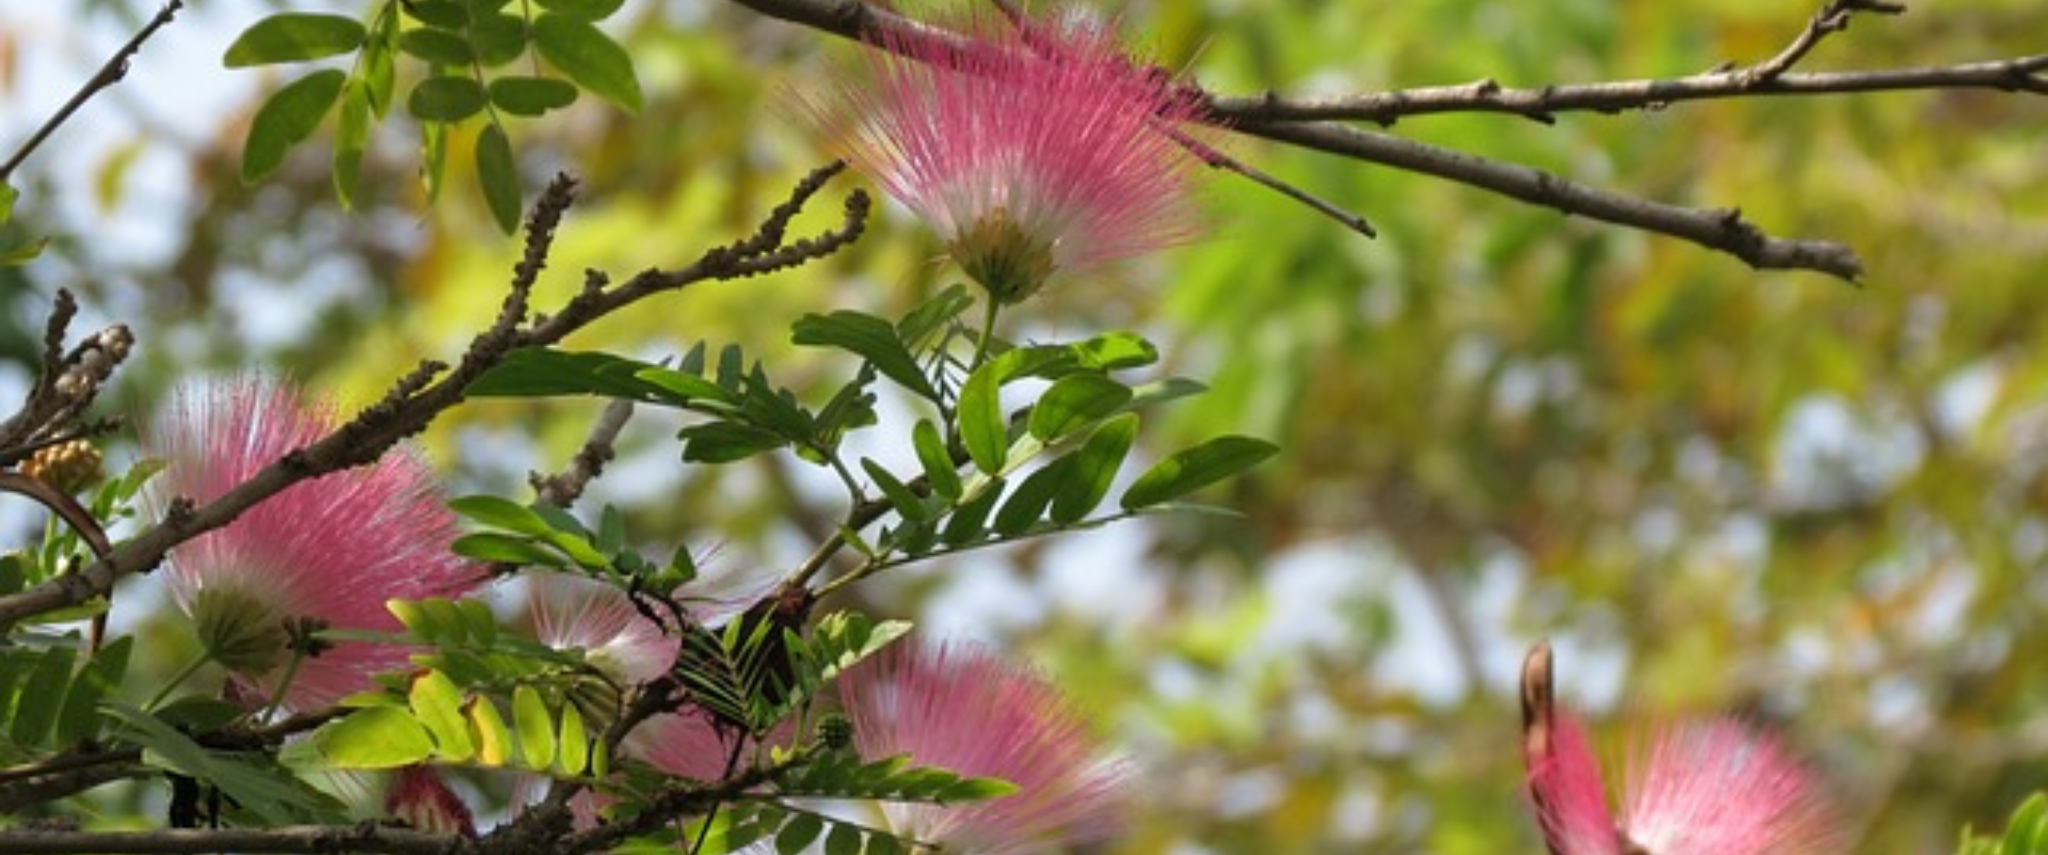 arbre albizia avec des fleurs